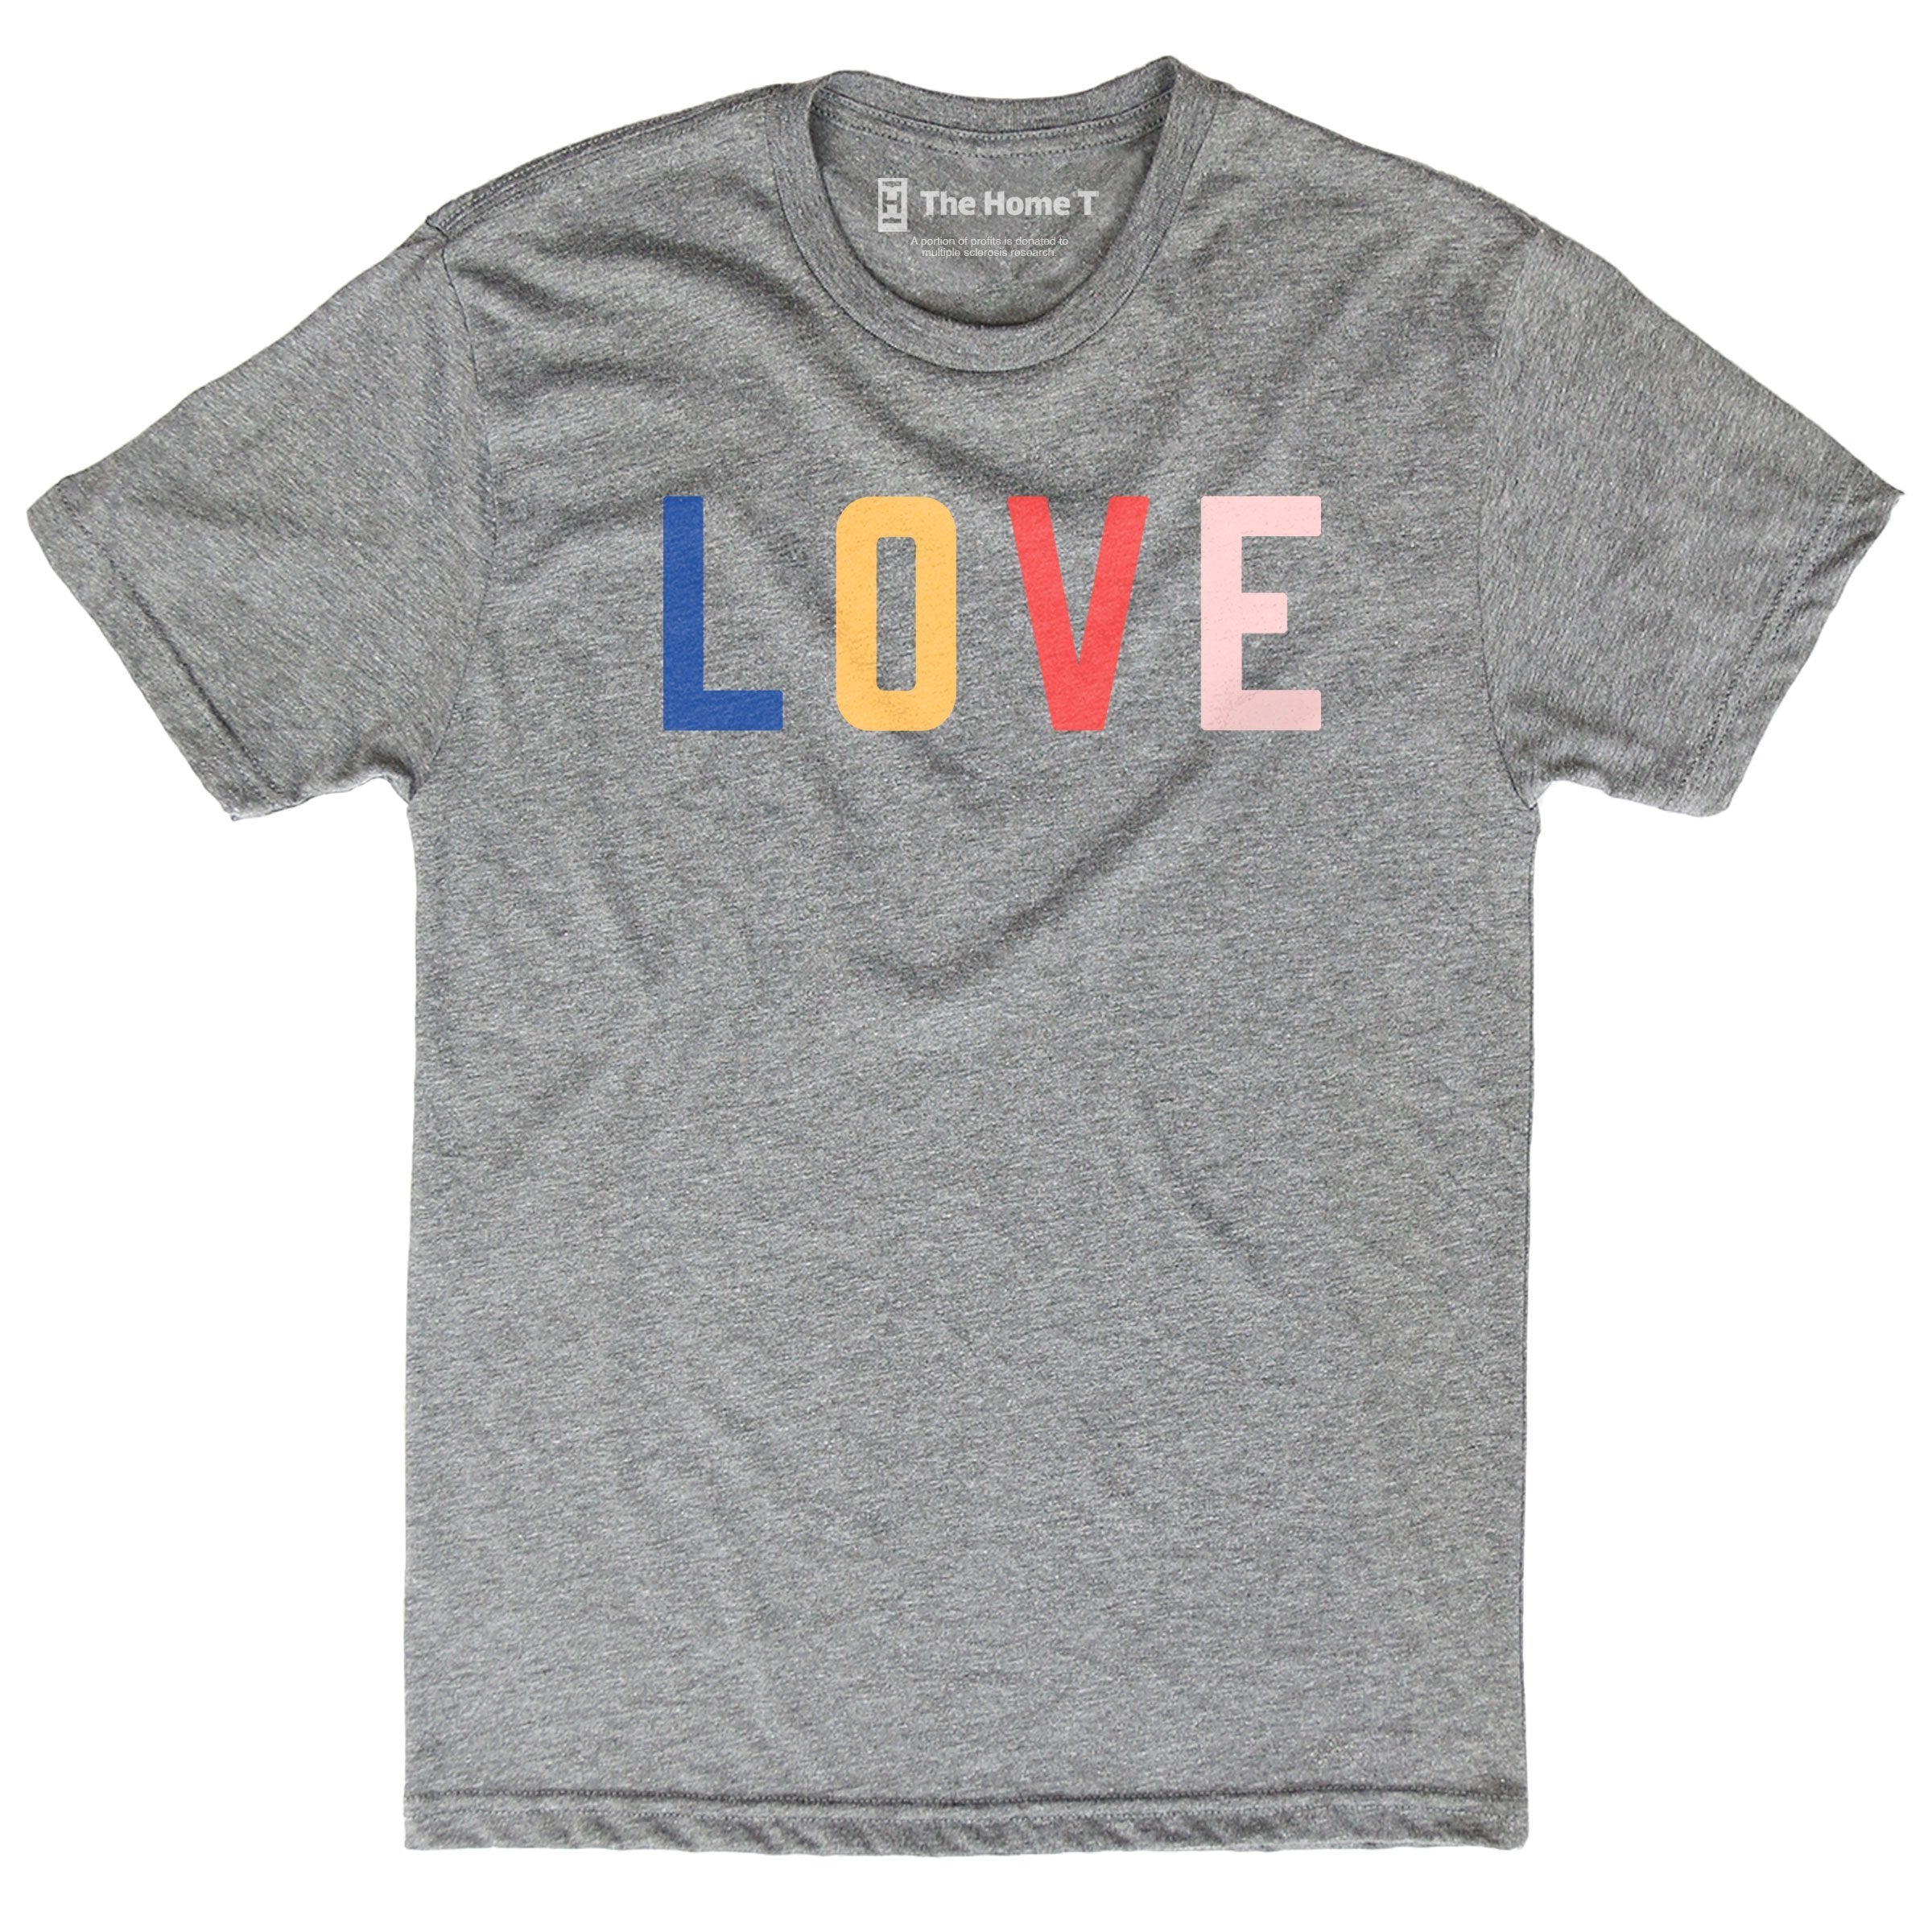 LOVE Color Pop Crew neck The Home T XS Crewneck T-shirt